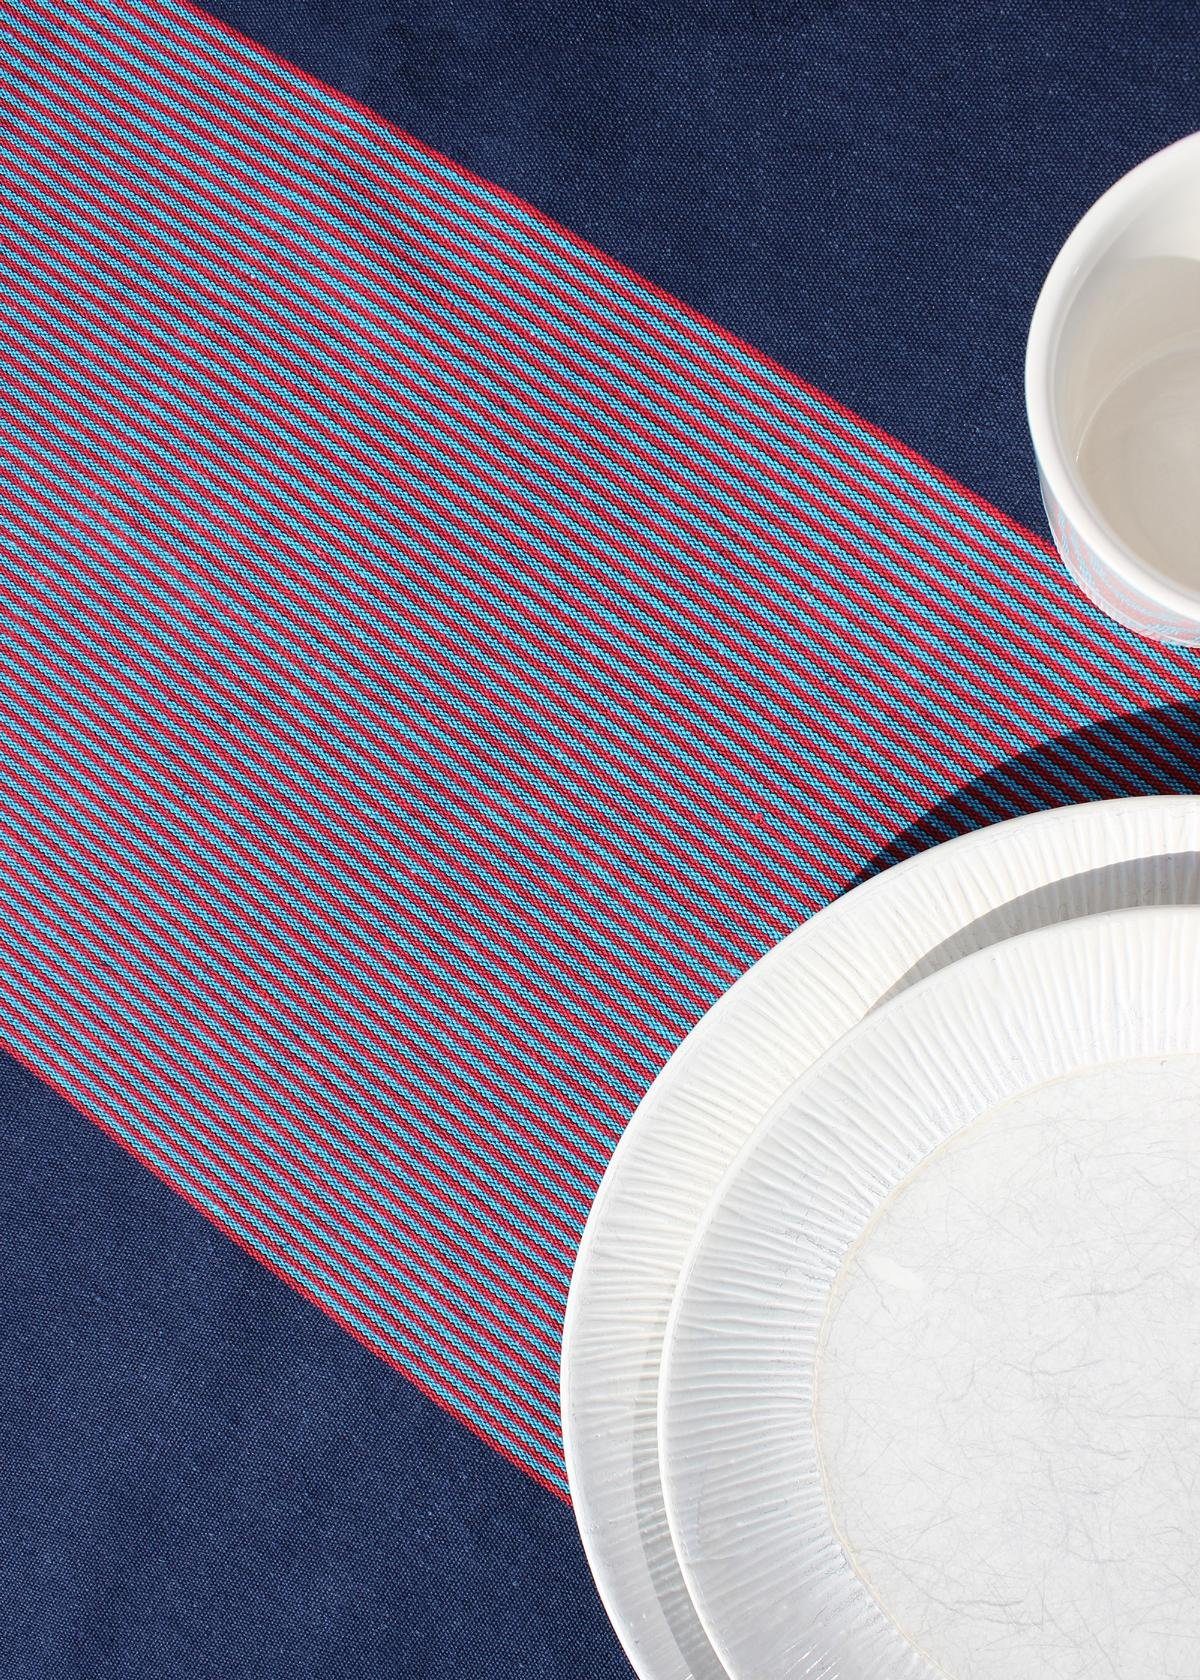 Indradanush Tischdecke gewebt, Tischdecke handgemacht Baumwolle, Tischdecke), Stück, rot weiß Hand 1 reine von blau Baumwolle (1 gewebt gestreift